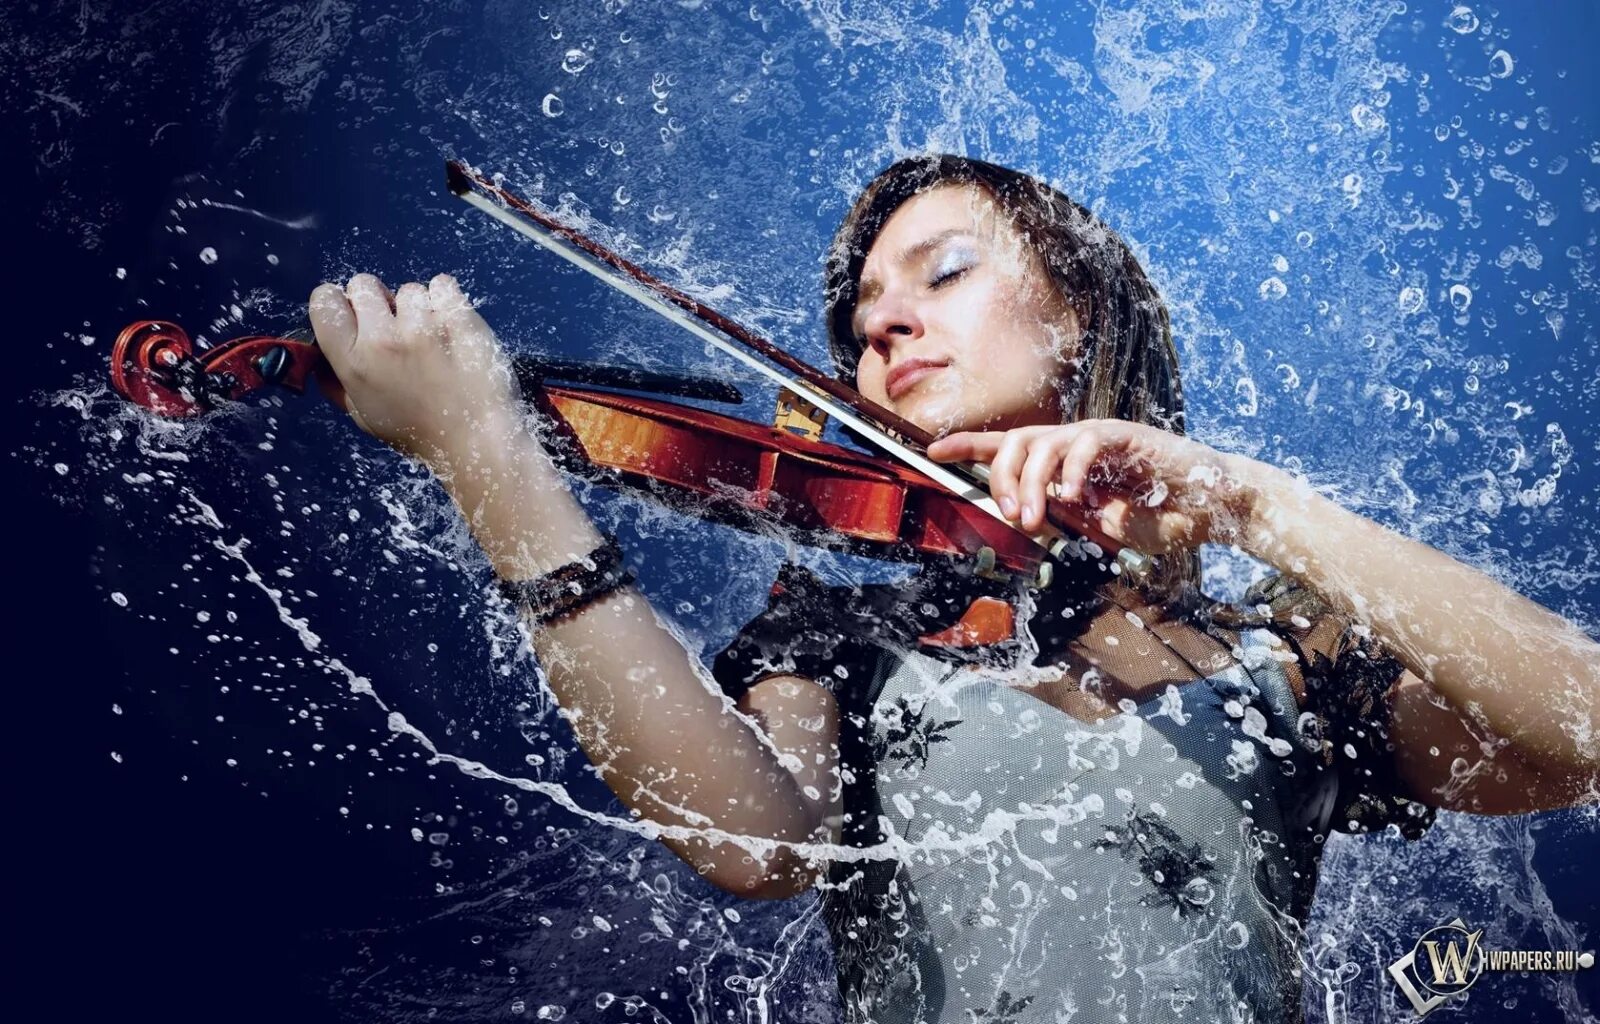 Музыка скрипка обработка слушать. Девушки со скрипкой. Брызги воды. Девушка в брызгах воды. Скрипачка под дождем.